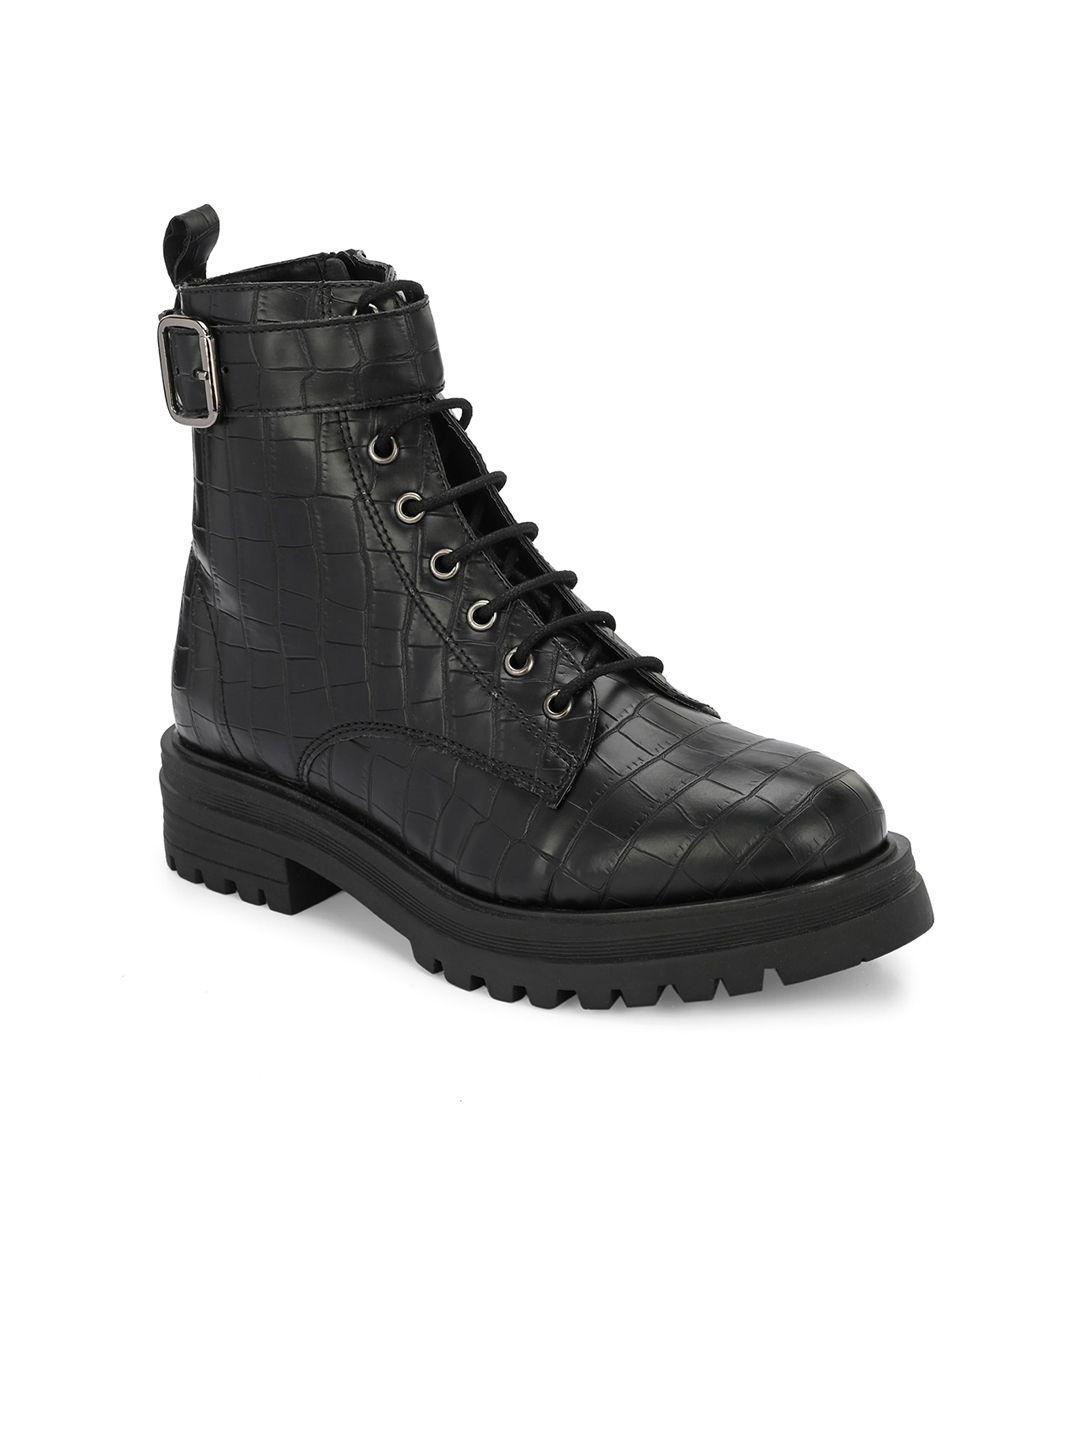 miseen women mid top textured platform heel regular boots with buckle detail